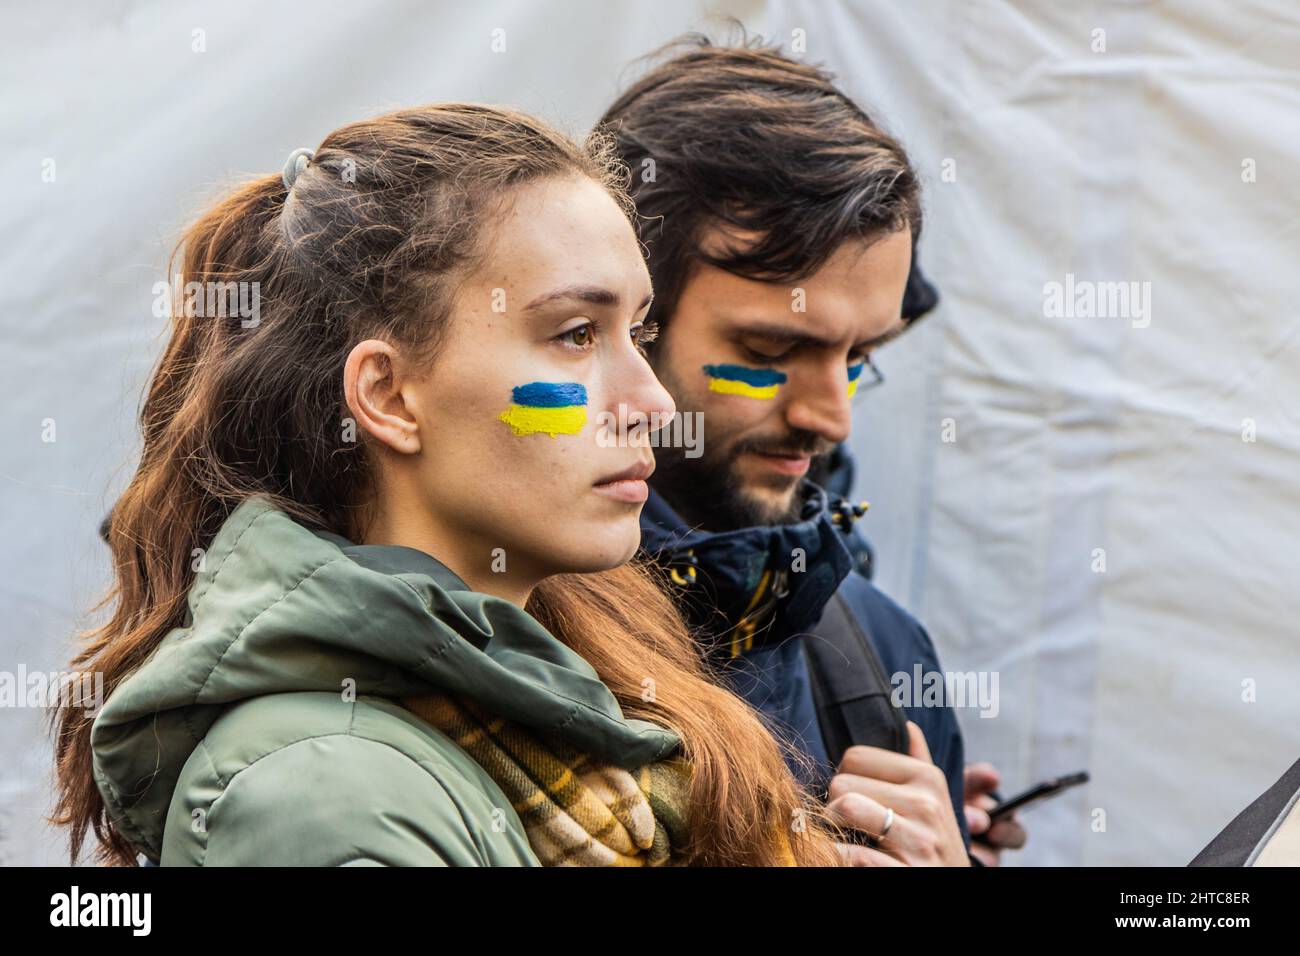 PRAGA, REPUBBLICA CECA - 27 FEBBRAIO 2022: Partecipanti alla protesta contro l'invasione russa dell'Ucraina sulla Piazza Venceslao a Praga, Repubblica Ceca R. Foto Stock